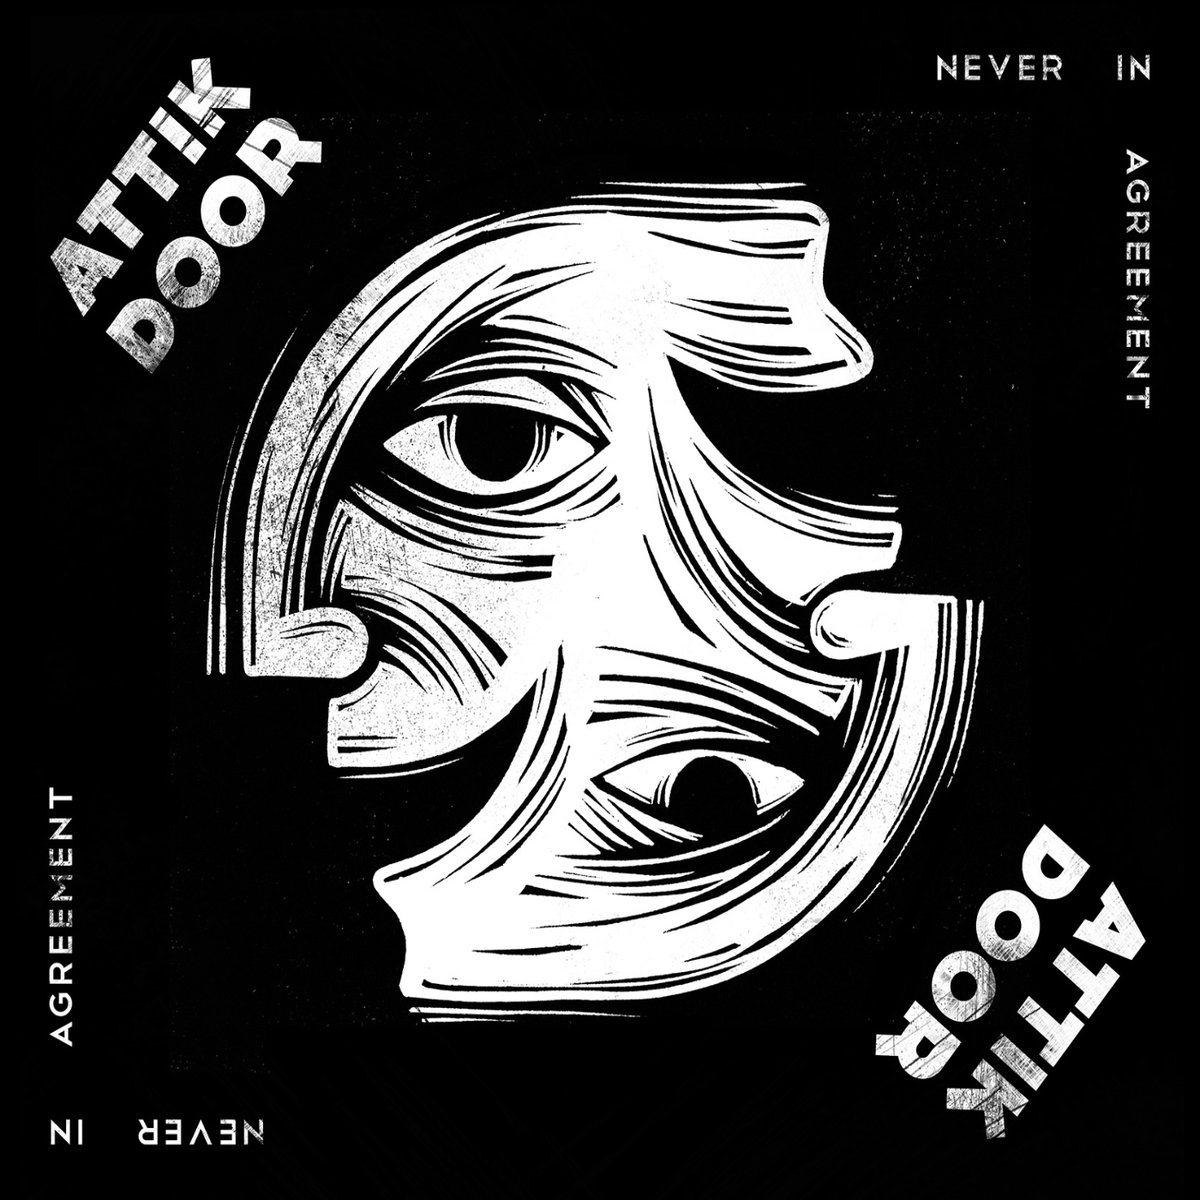 Attik Door - Moody @ 'Never in Agreement' album (alternative metal, hard rock)